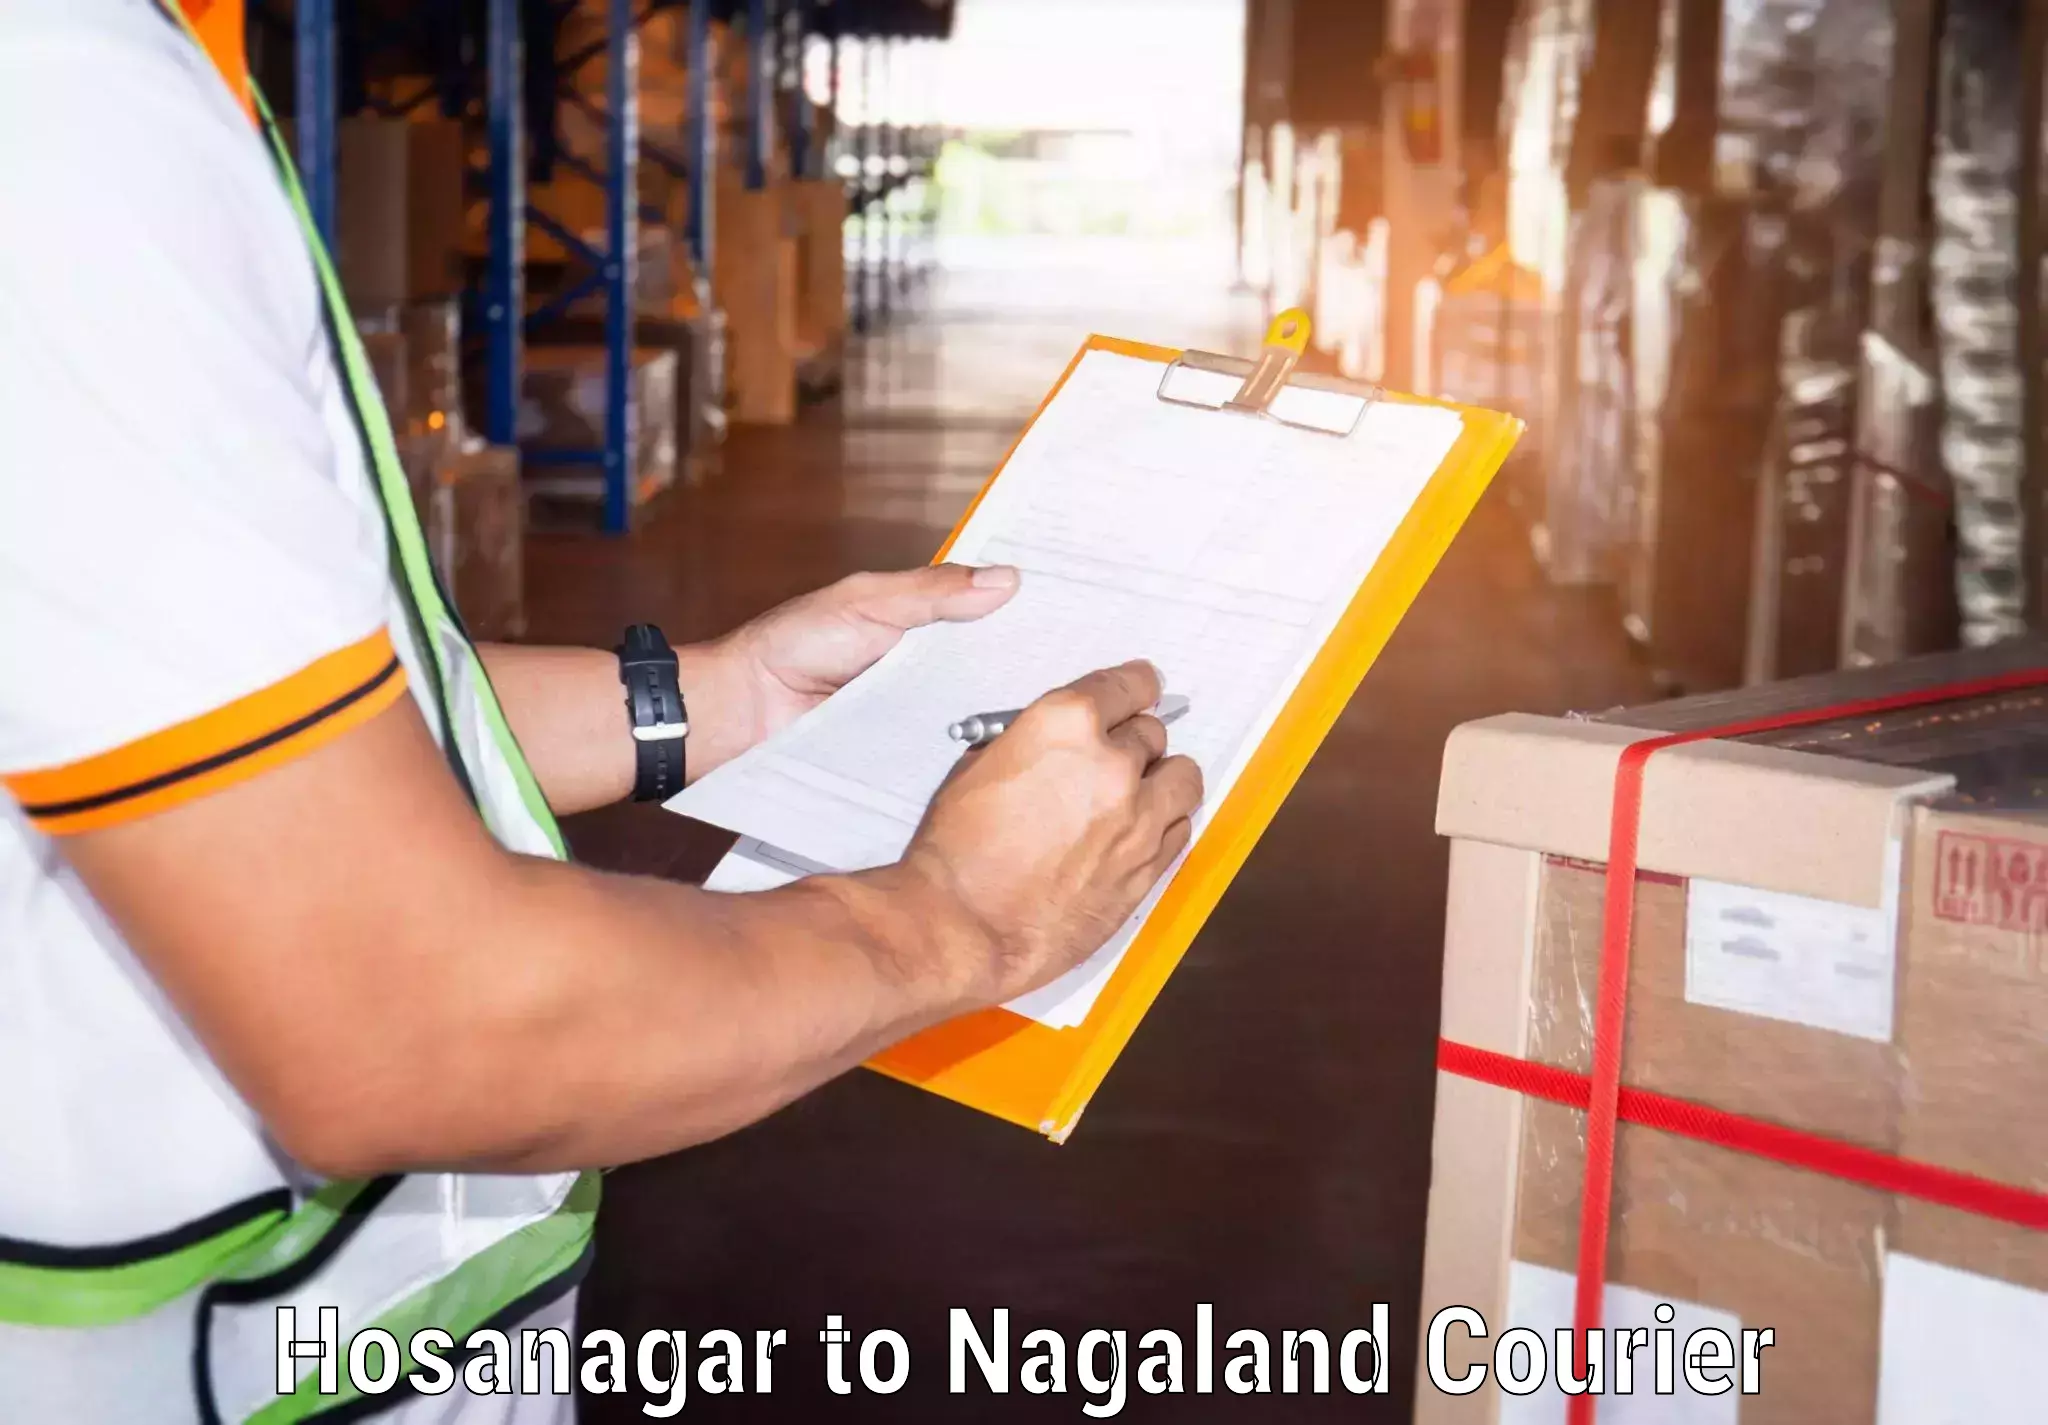 Global shipping networks Hosanagar to Nagaland